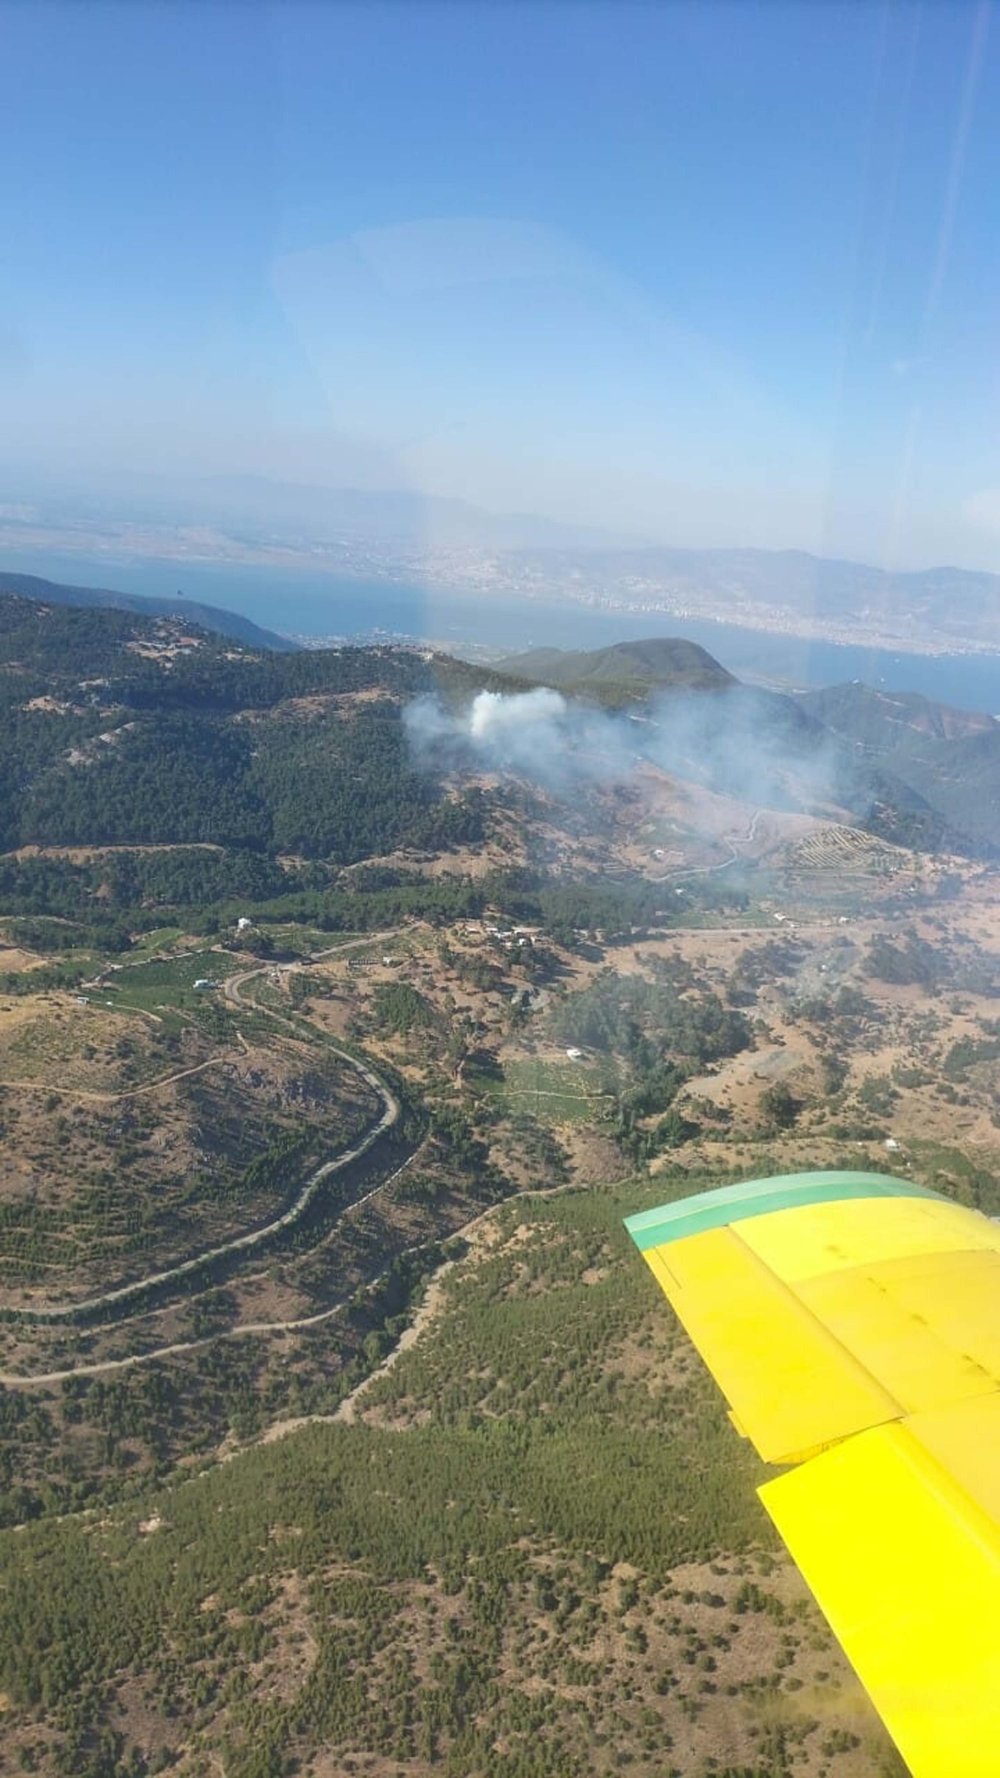 İzmir’in Karabağlar ilçesinde orman yangını